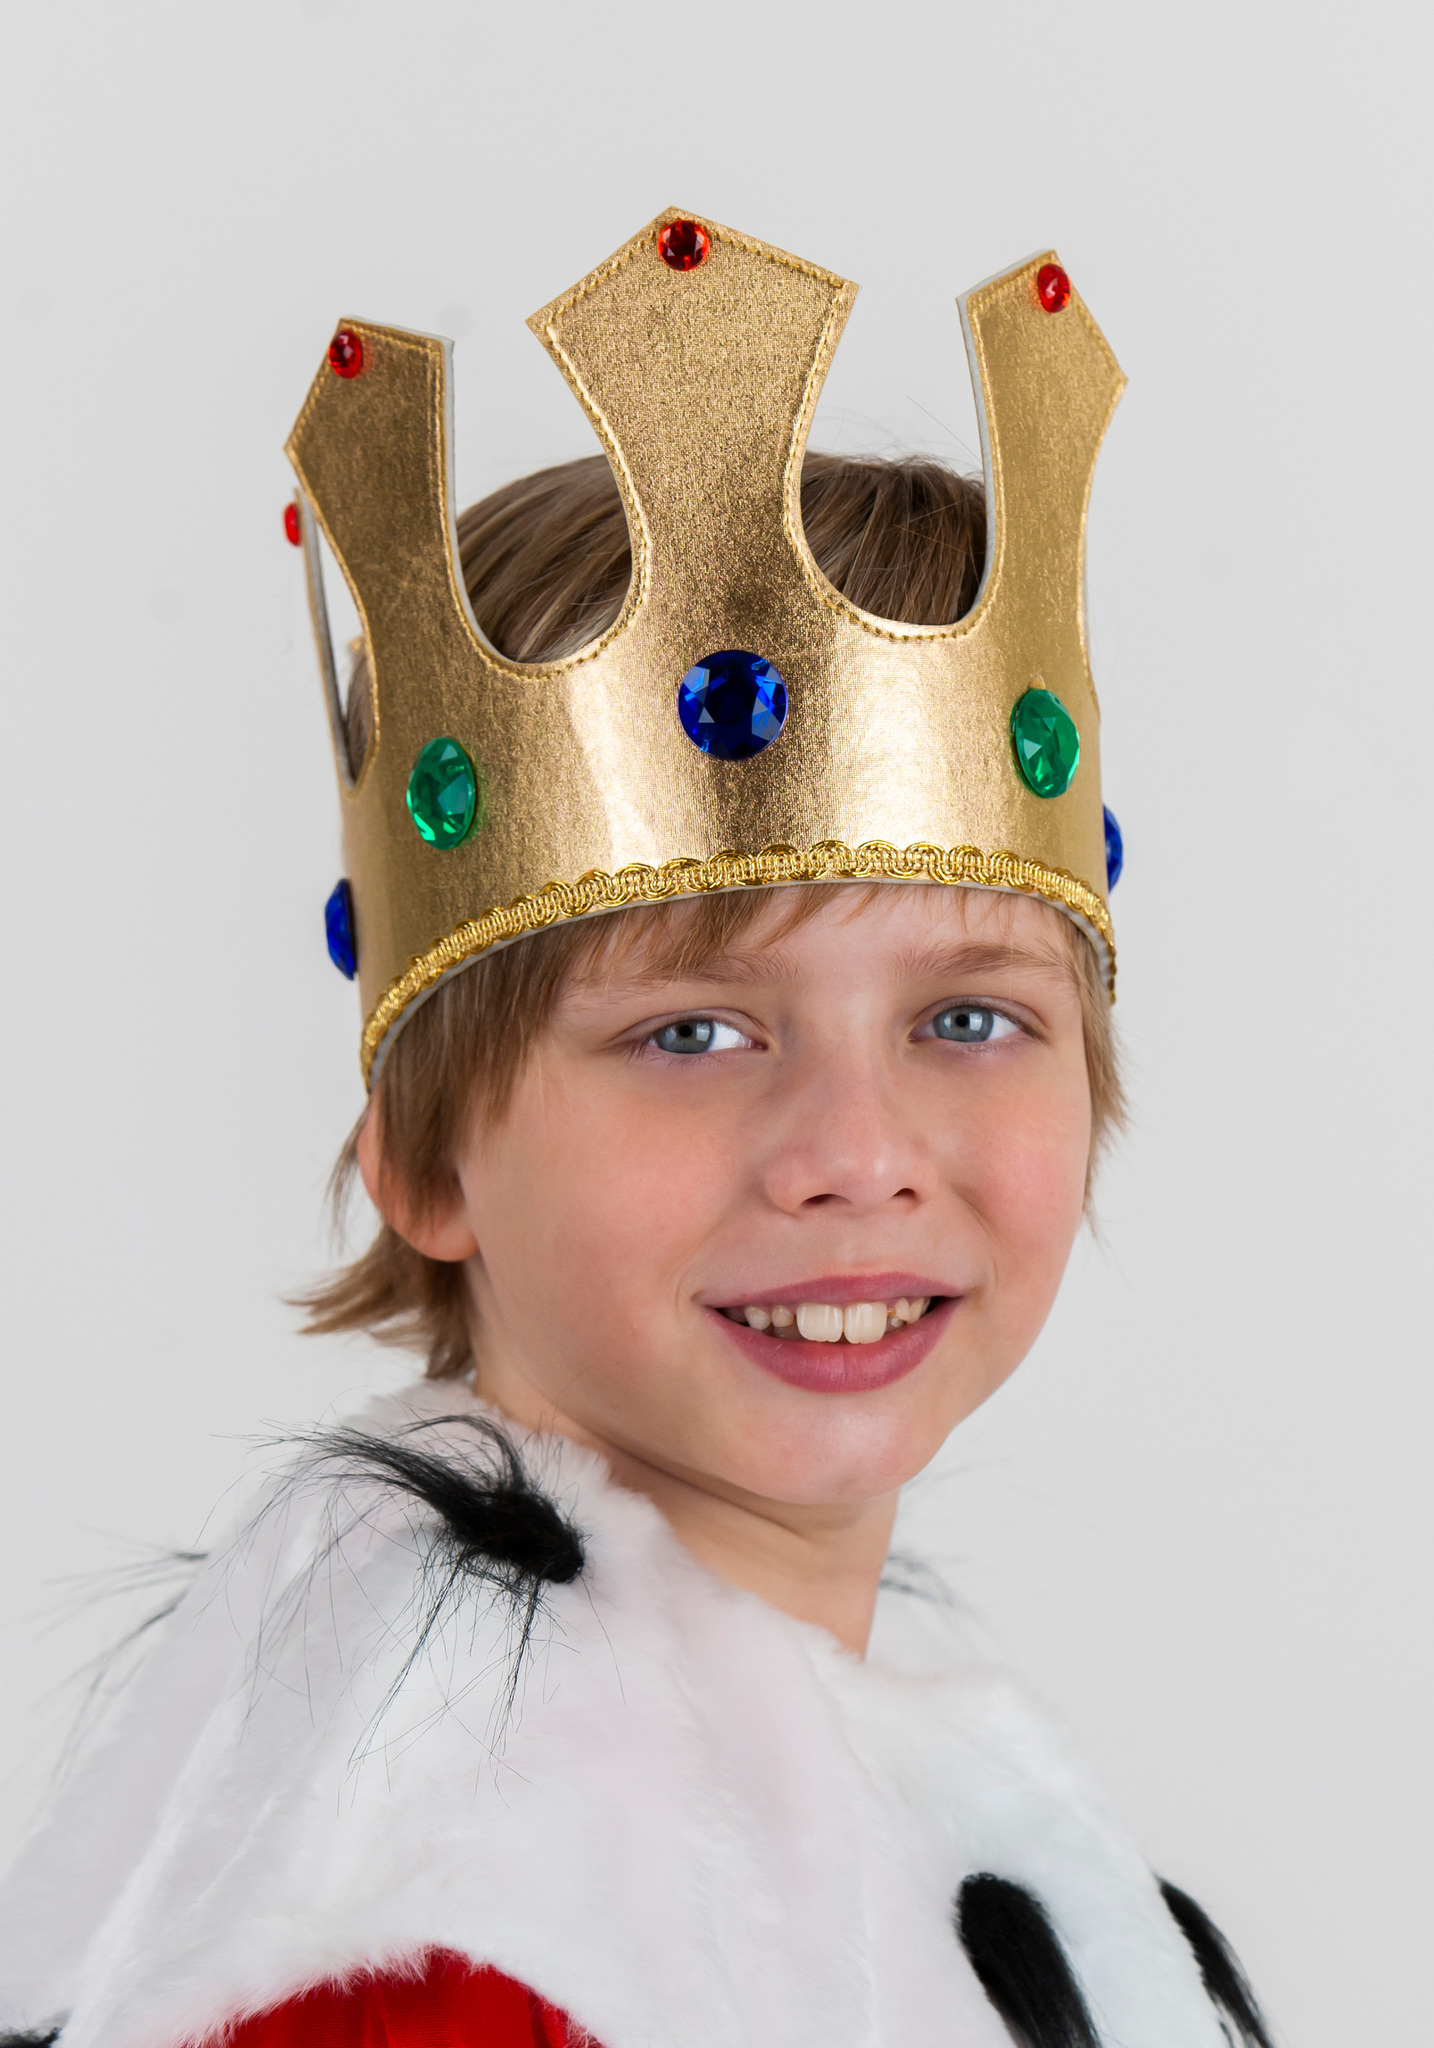 Как сделать корону короля своими руками из бумаги А4 и скрепок?